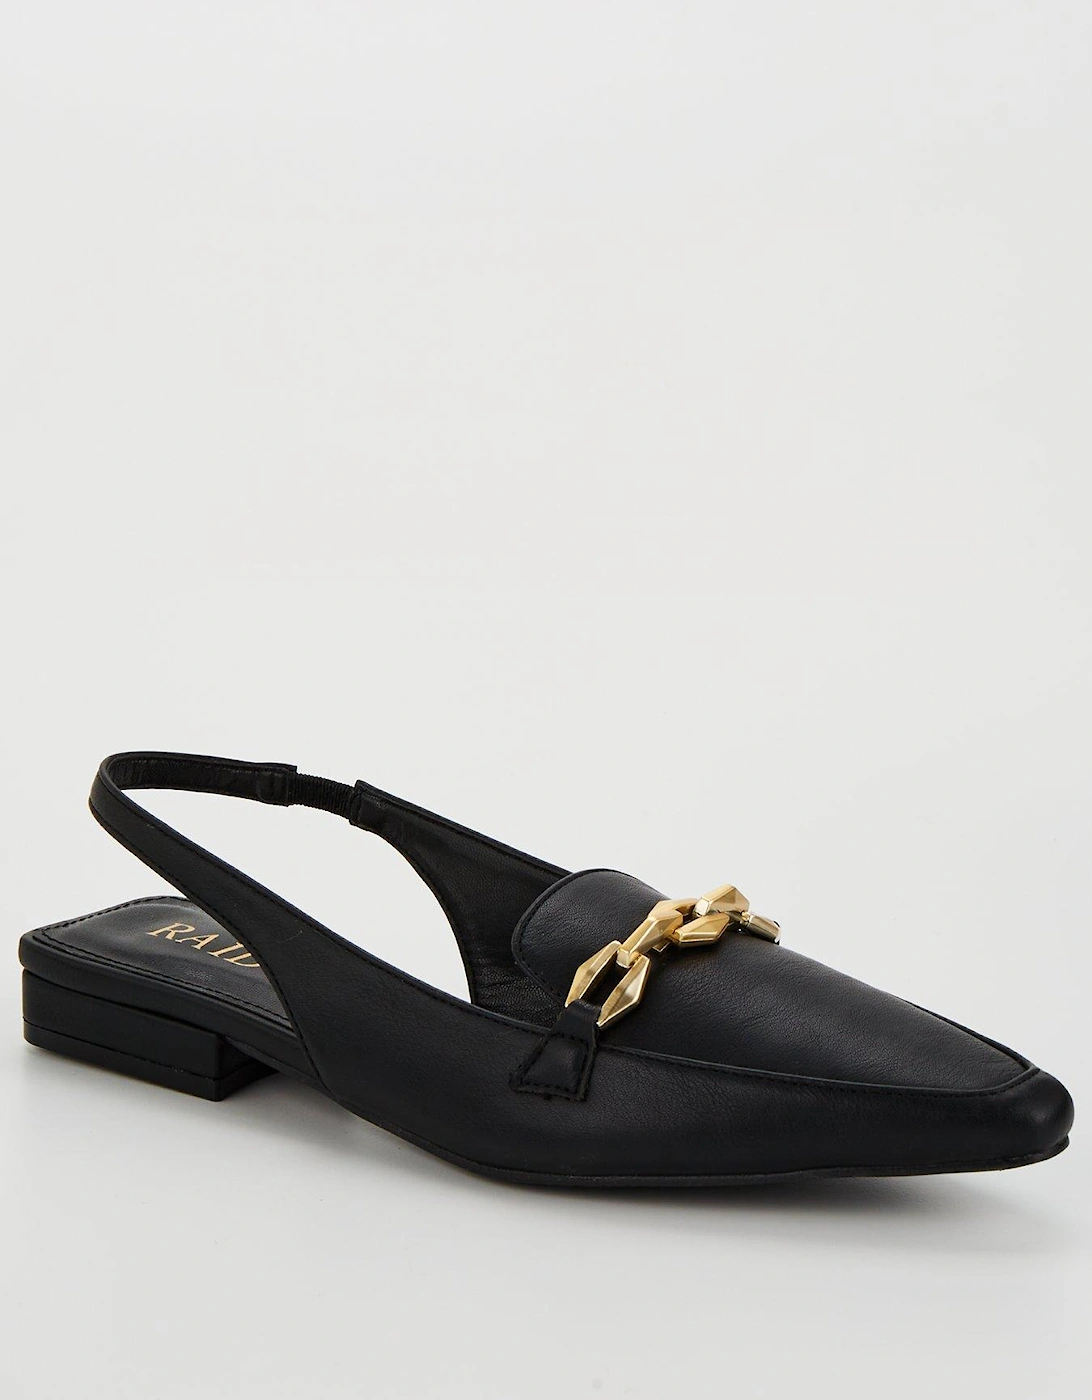 Koral Almond Toe Sling Bag Shoes - Black, 7 of 6